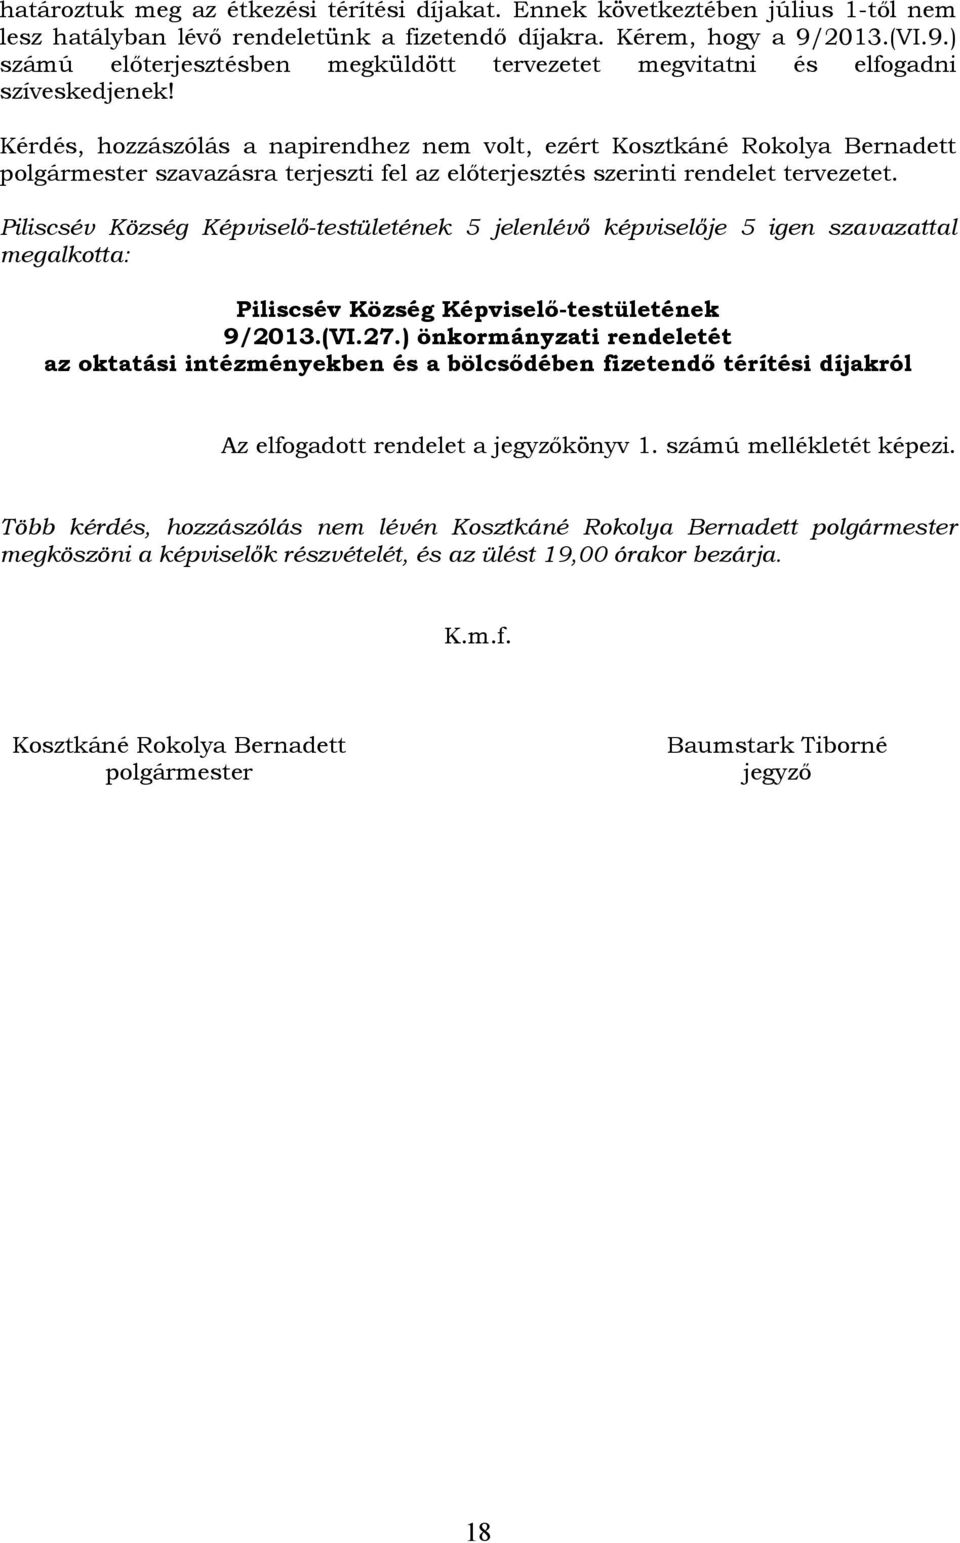 Kérdés, hozzászólás a napirendhez nem volt, ezért Kosztkáné Rokolya Bernadett polgármester szavazásra terjeszti fel az előterjesztés szerinti rendelet tervezetet.